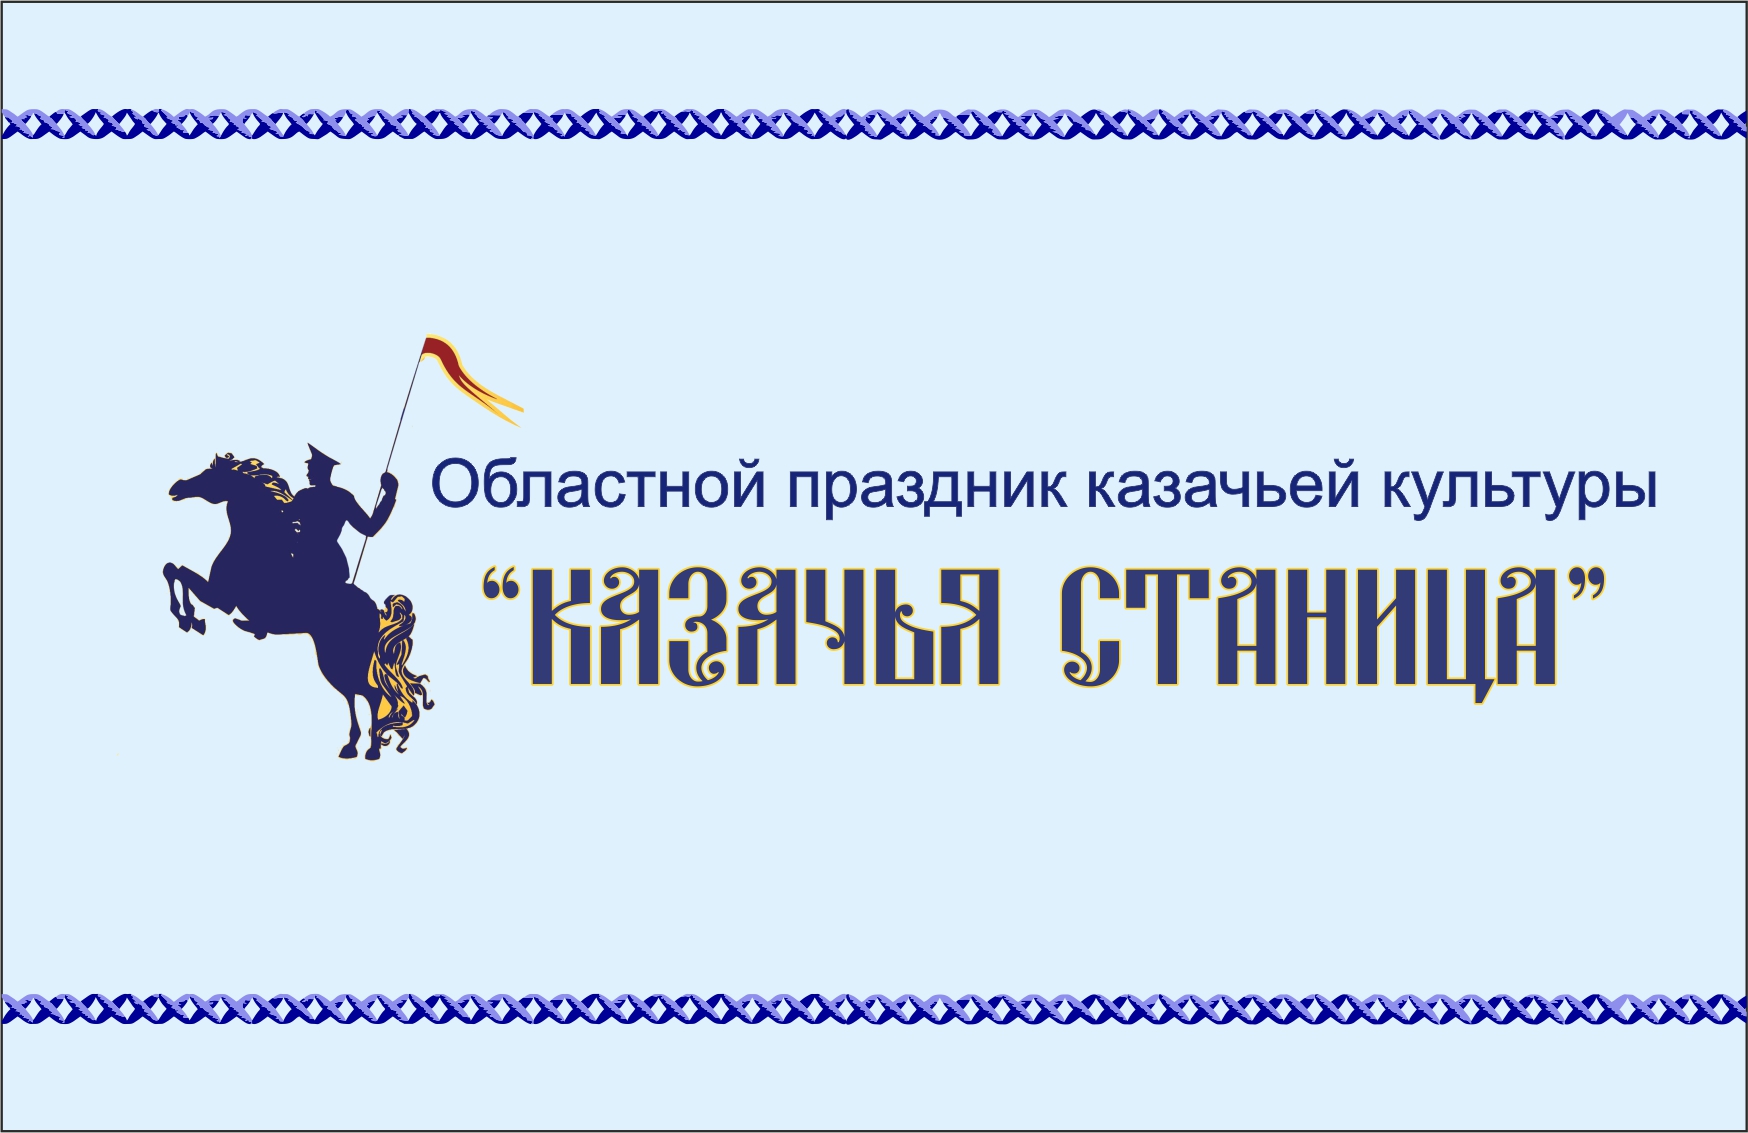 Мастер-класс по вокалу пройдет в Астрахани для руководителей казачьих самодеятельных коллективов